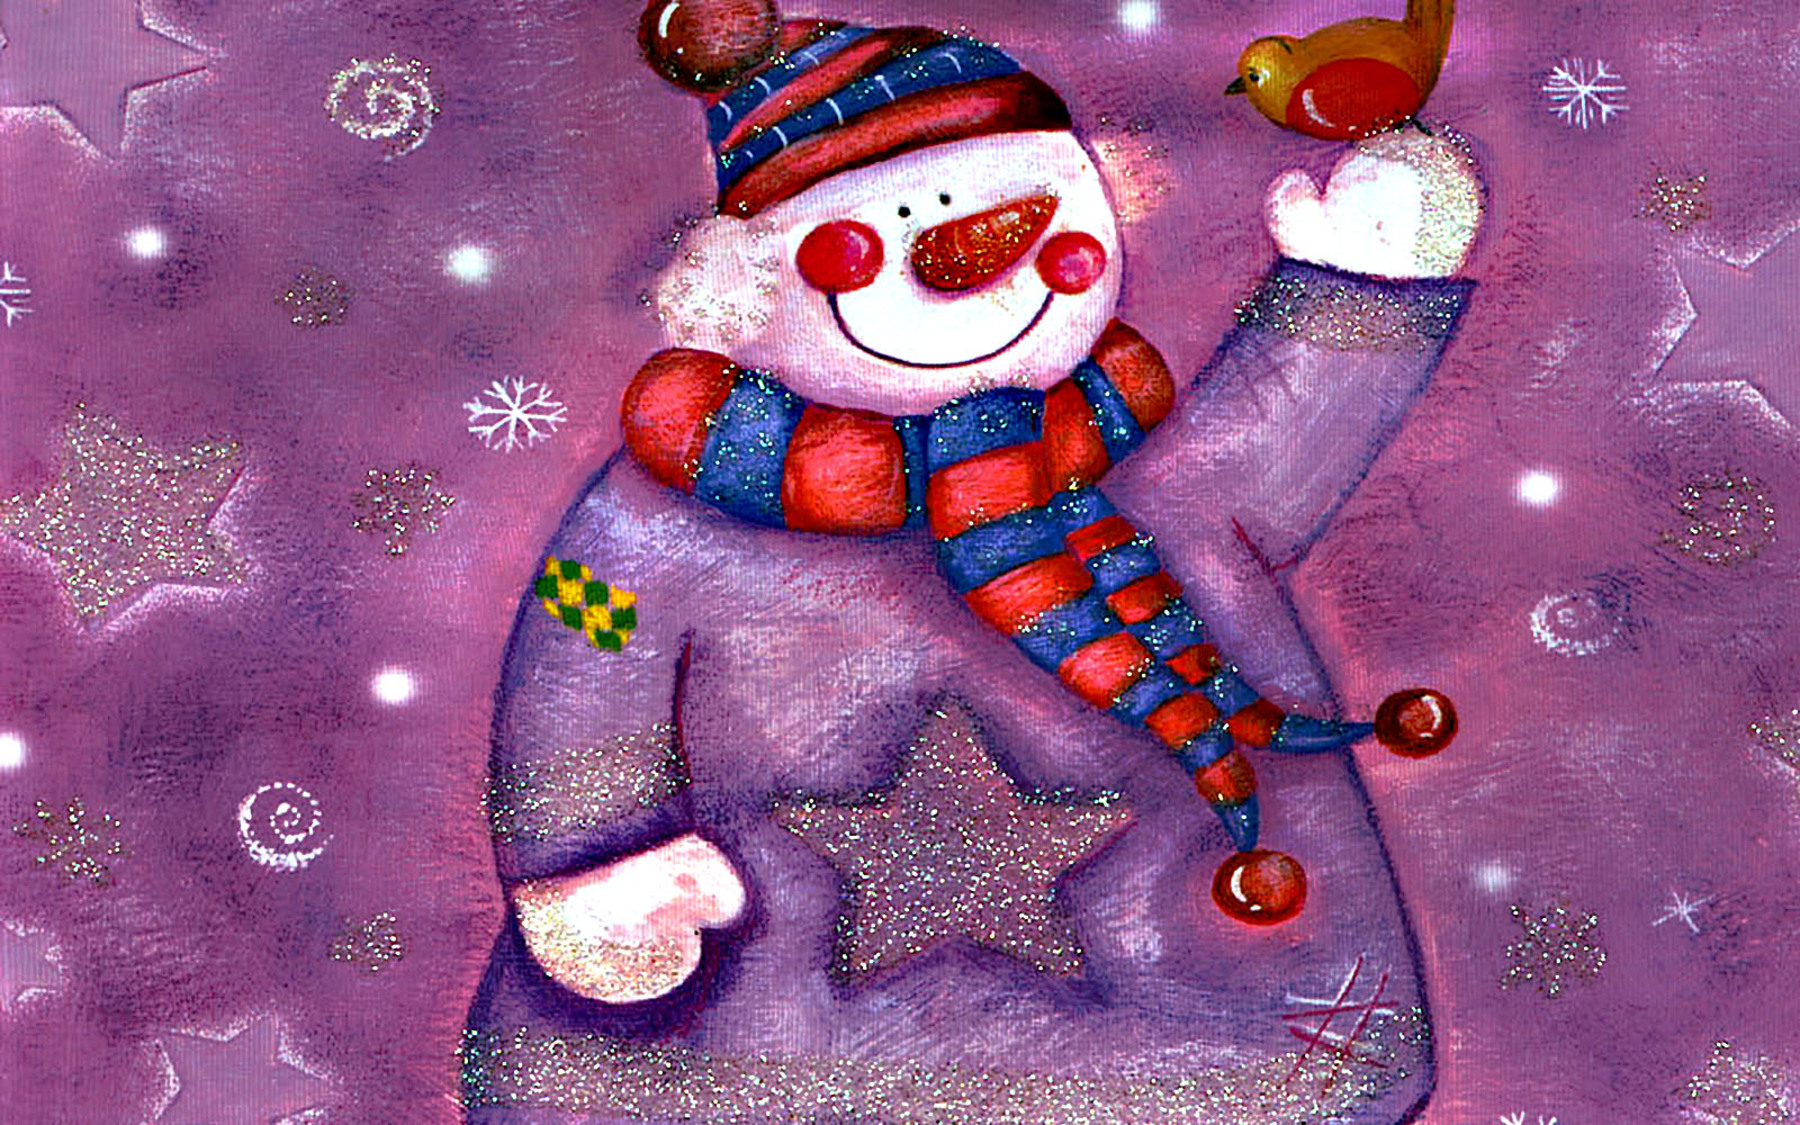 http://imgs.mi9.com/uploads/holiday/4816/free-big-snowman-wallpaper_1800x1125_87981.jpg